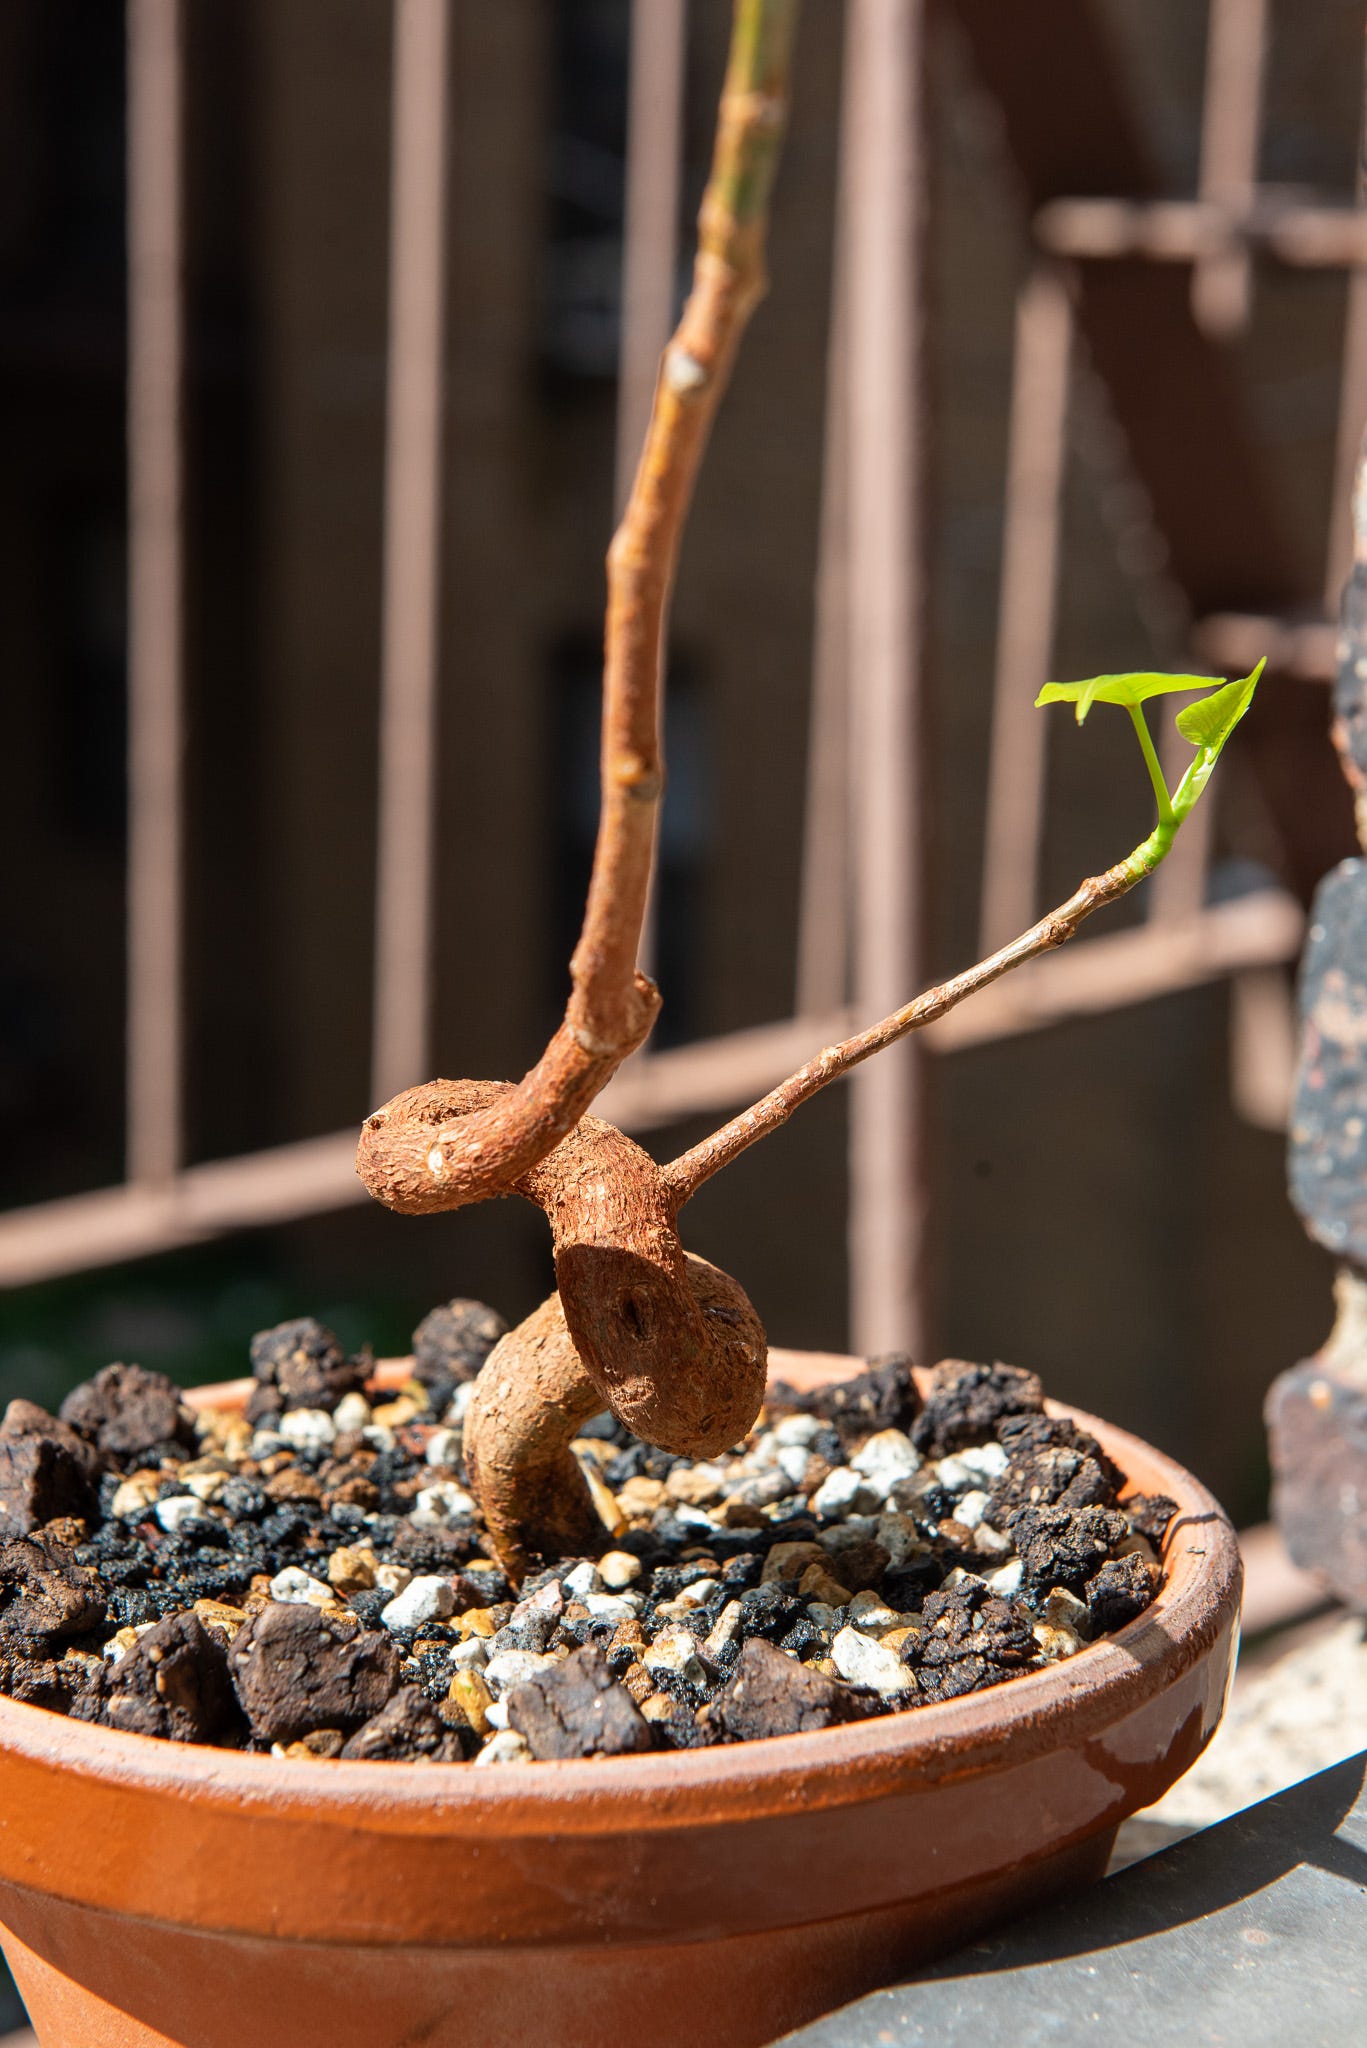 ID: Ficus religiosa bonsai